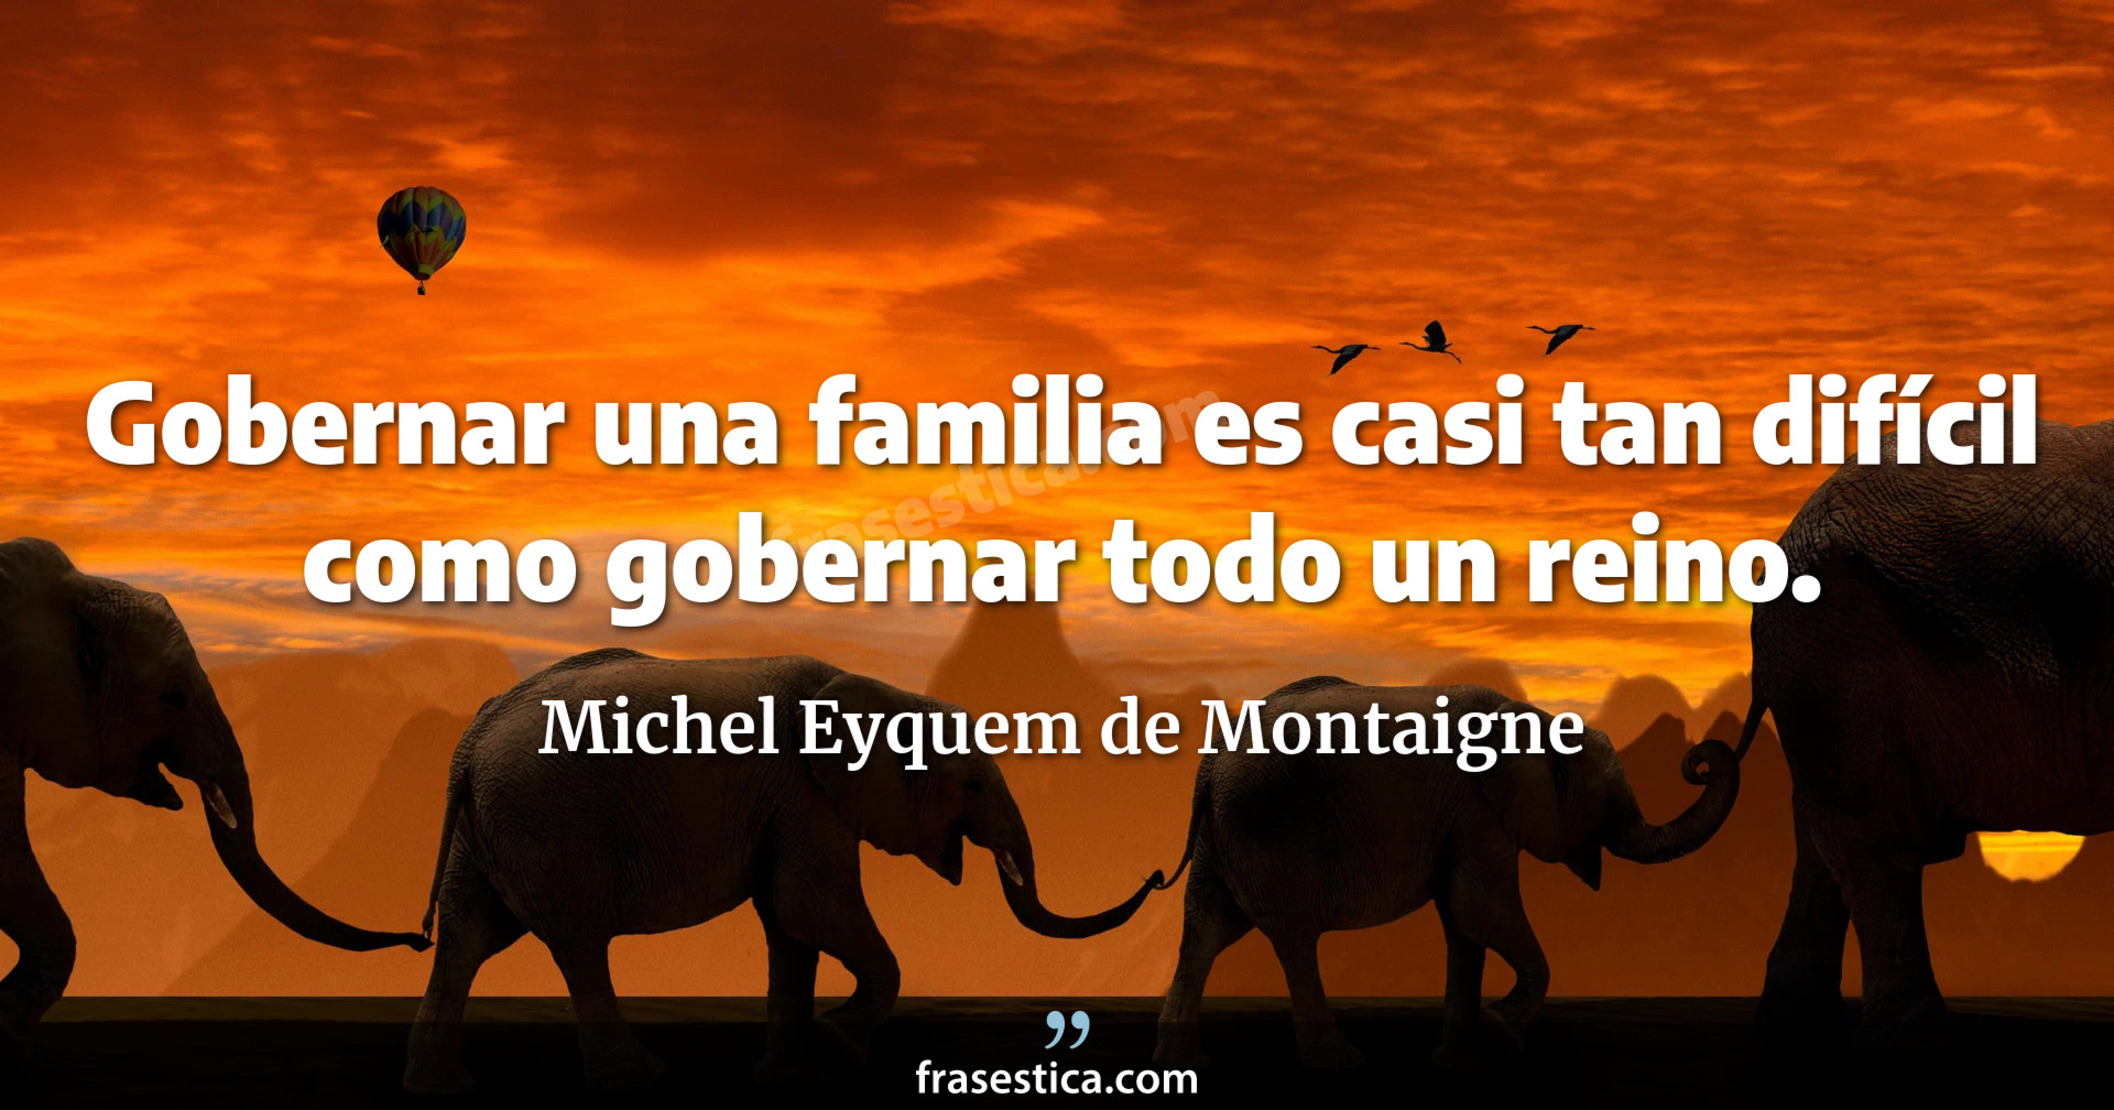 Gobernar una familia es casi tan difícil como gobernar todo un reino. - Michel Eyquem de Montaigne